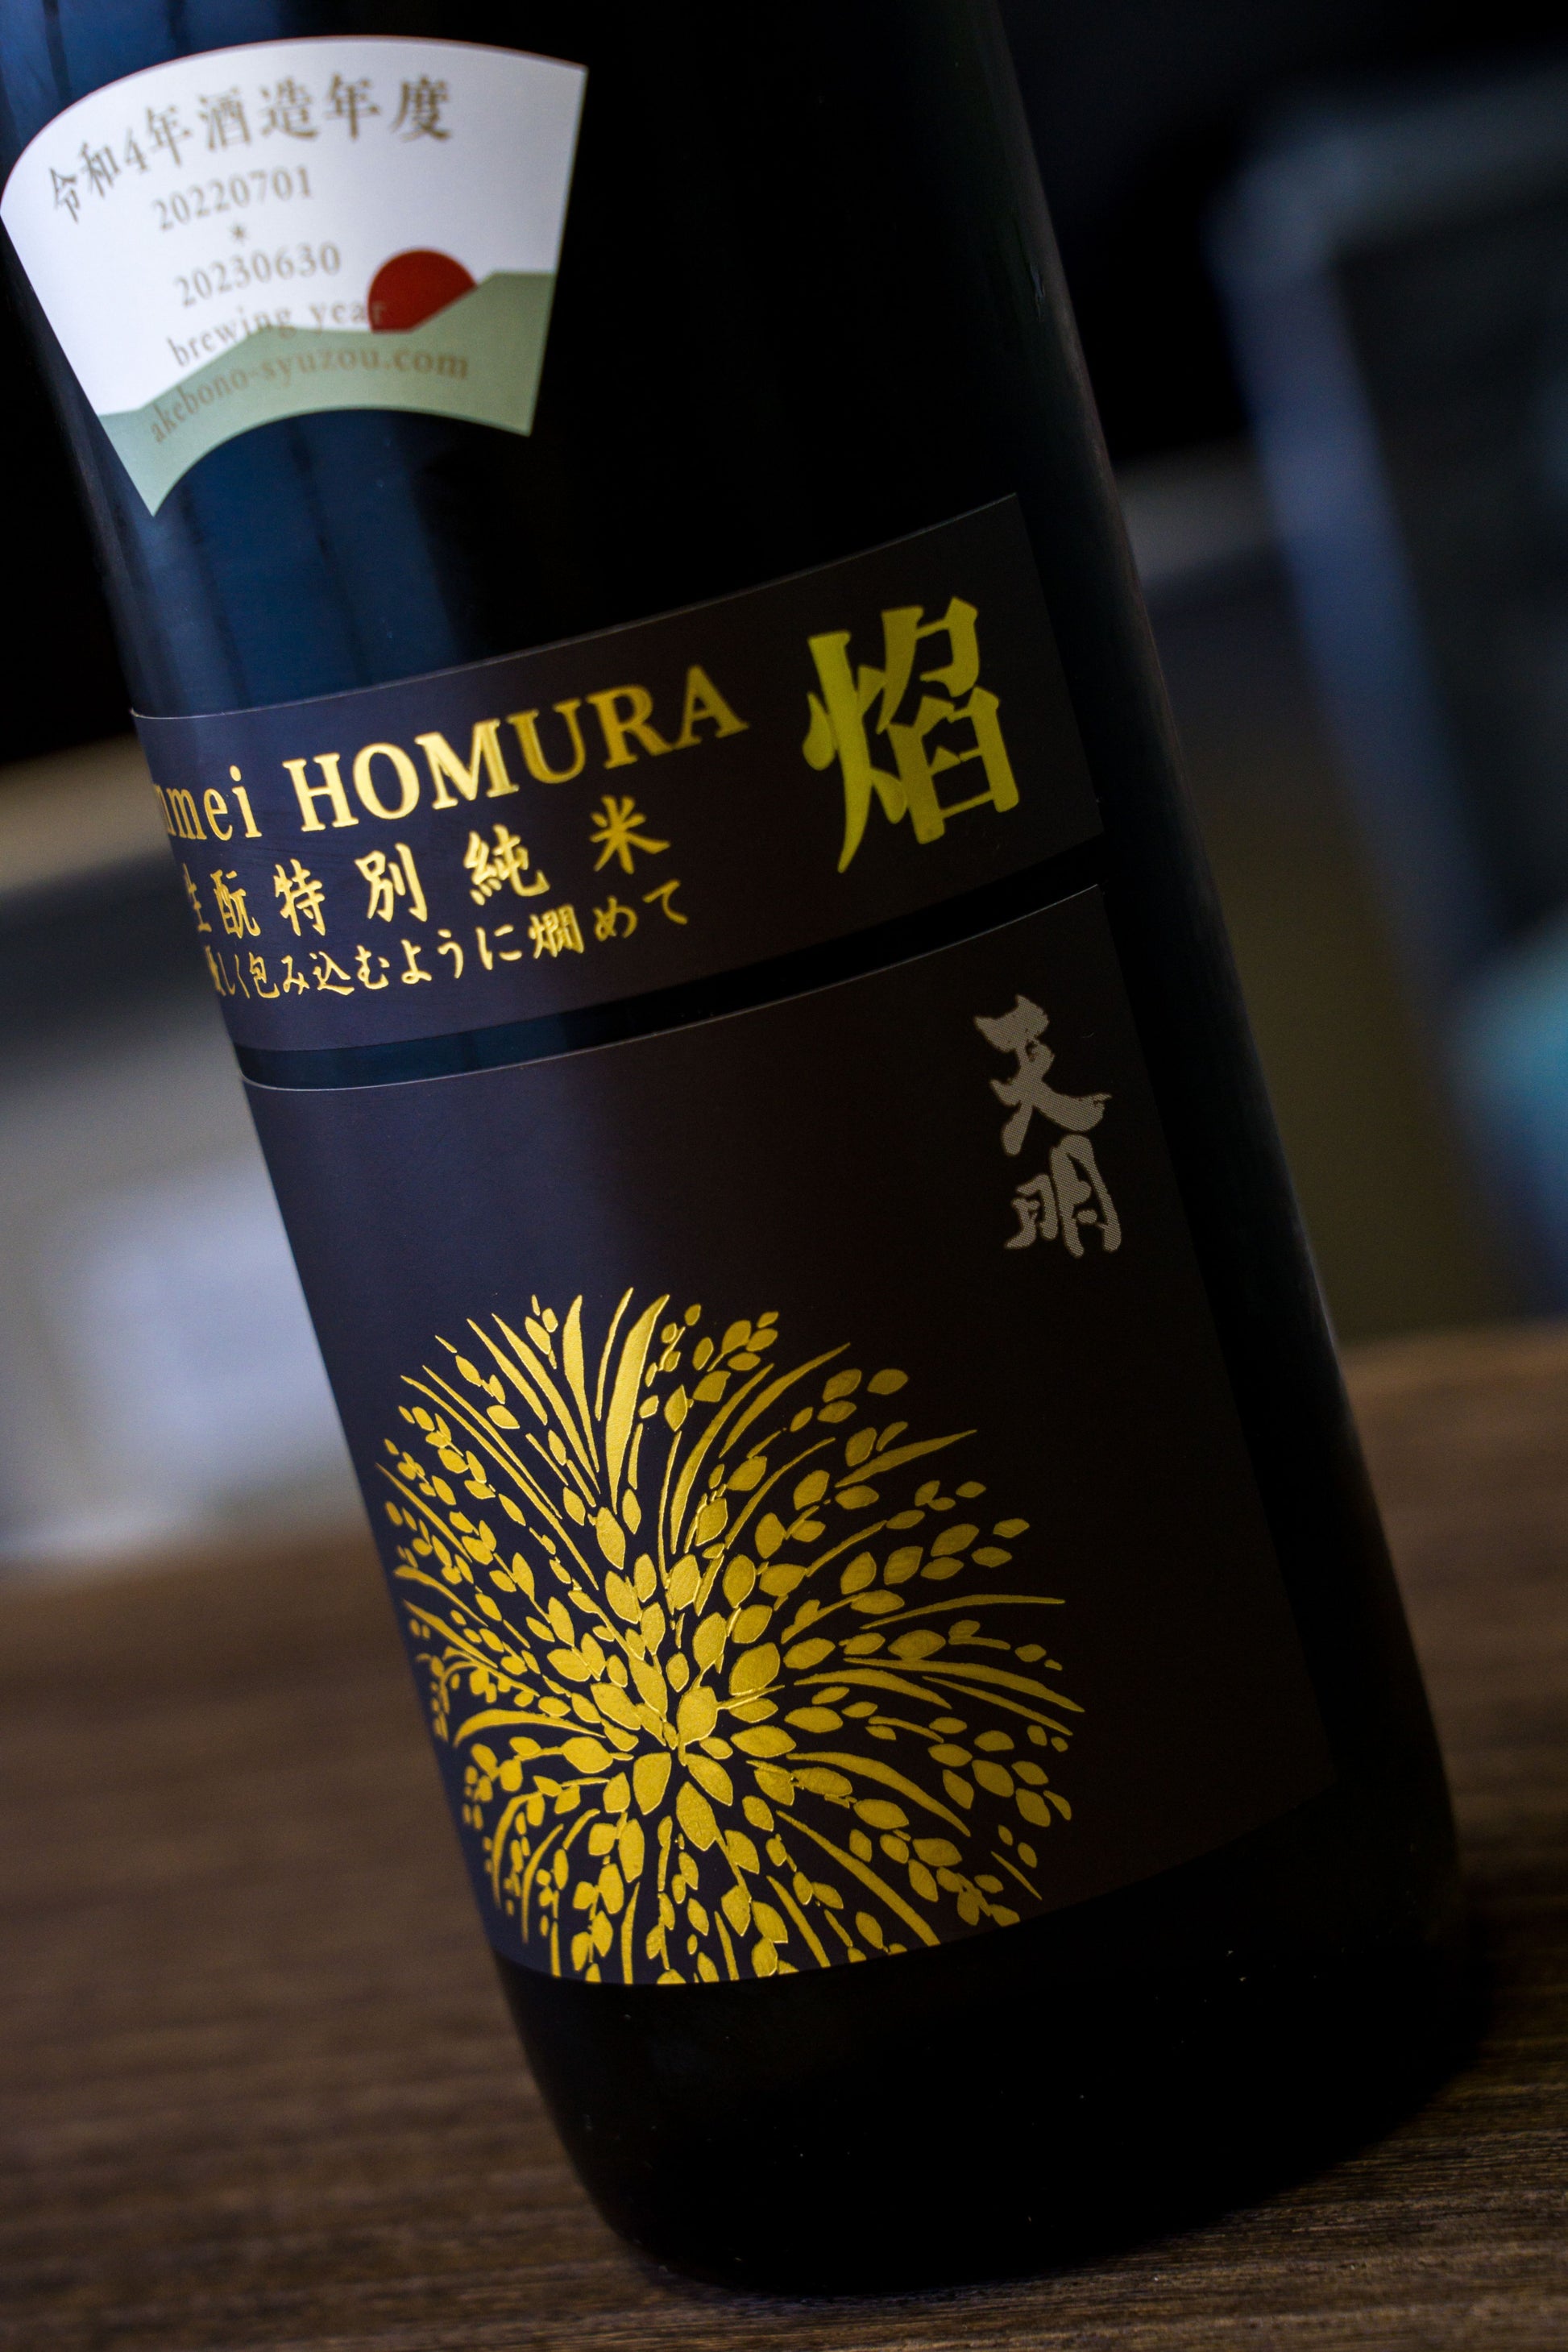 天明 焰 Homura 生酛 特別純米酒 生酒